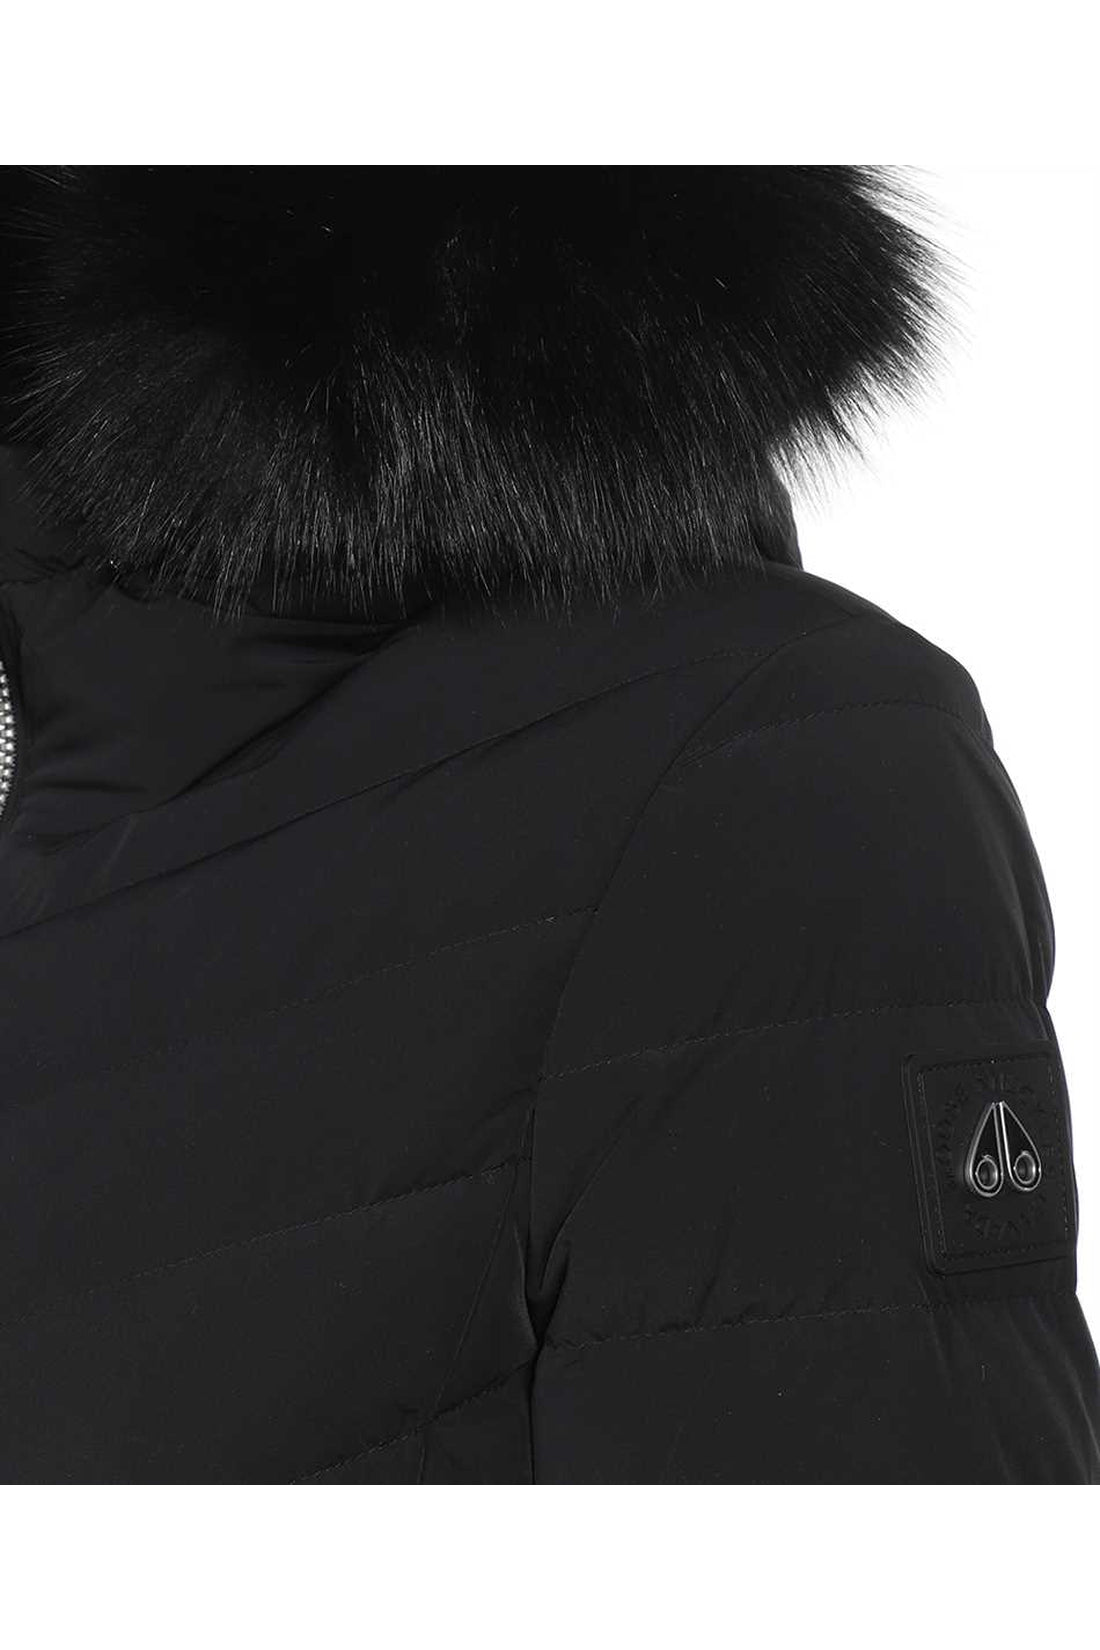 Moose Knuckles-OUTLET-SALE-Fur hood long down jacket-ARCHIVIST